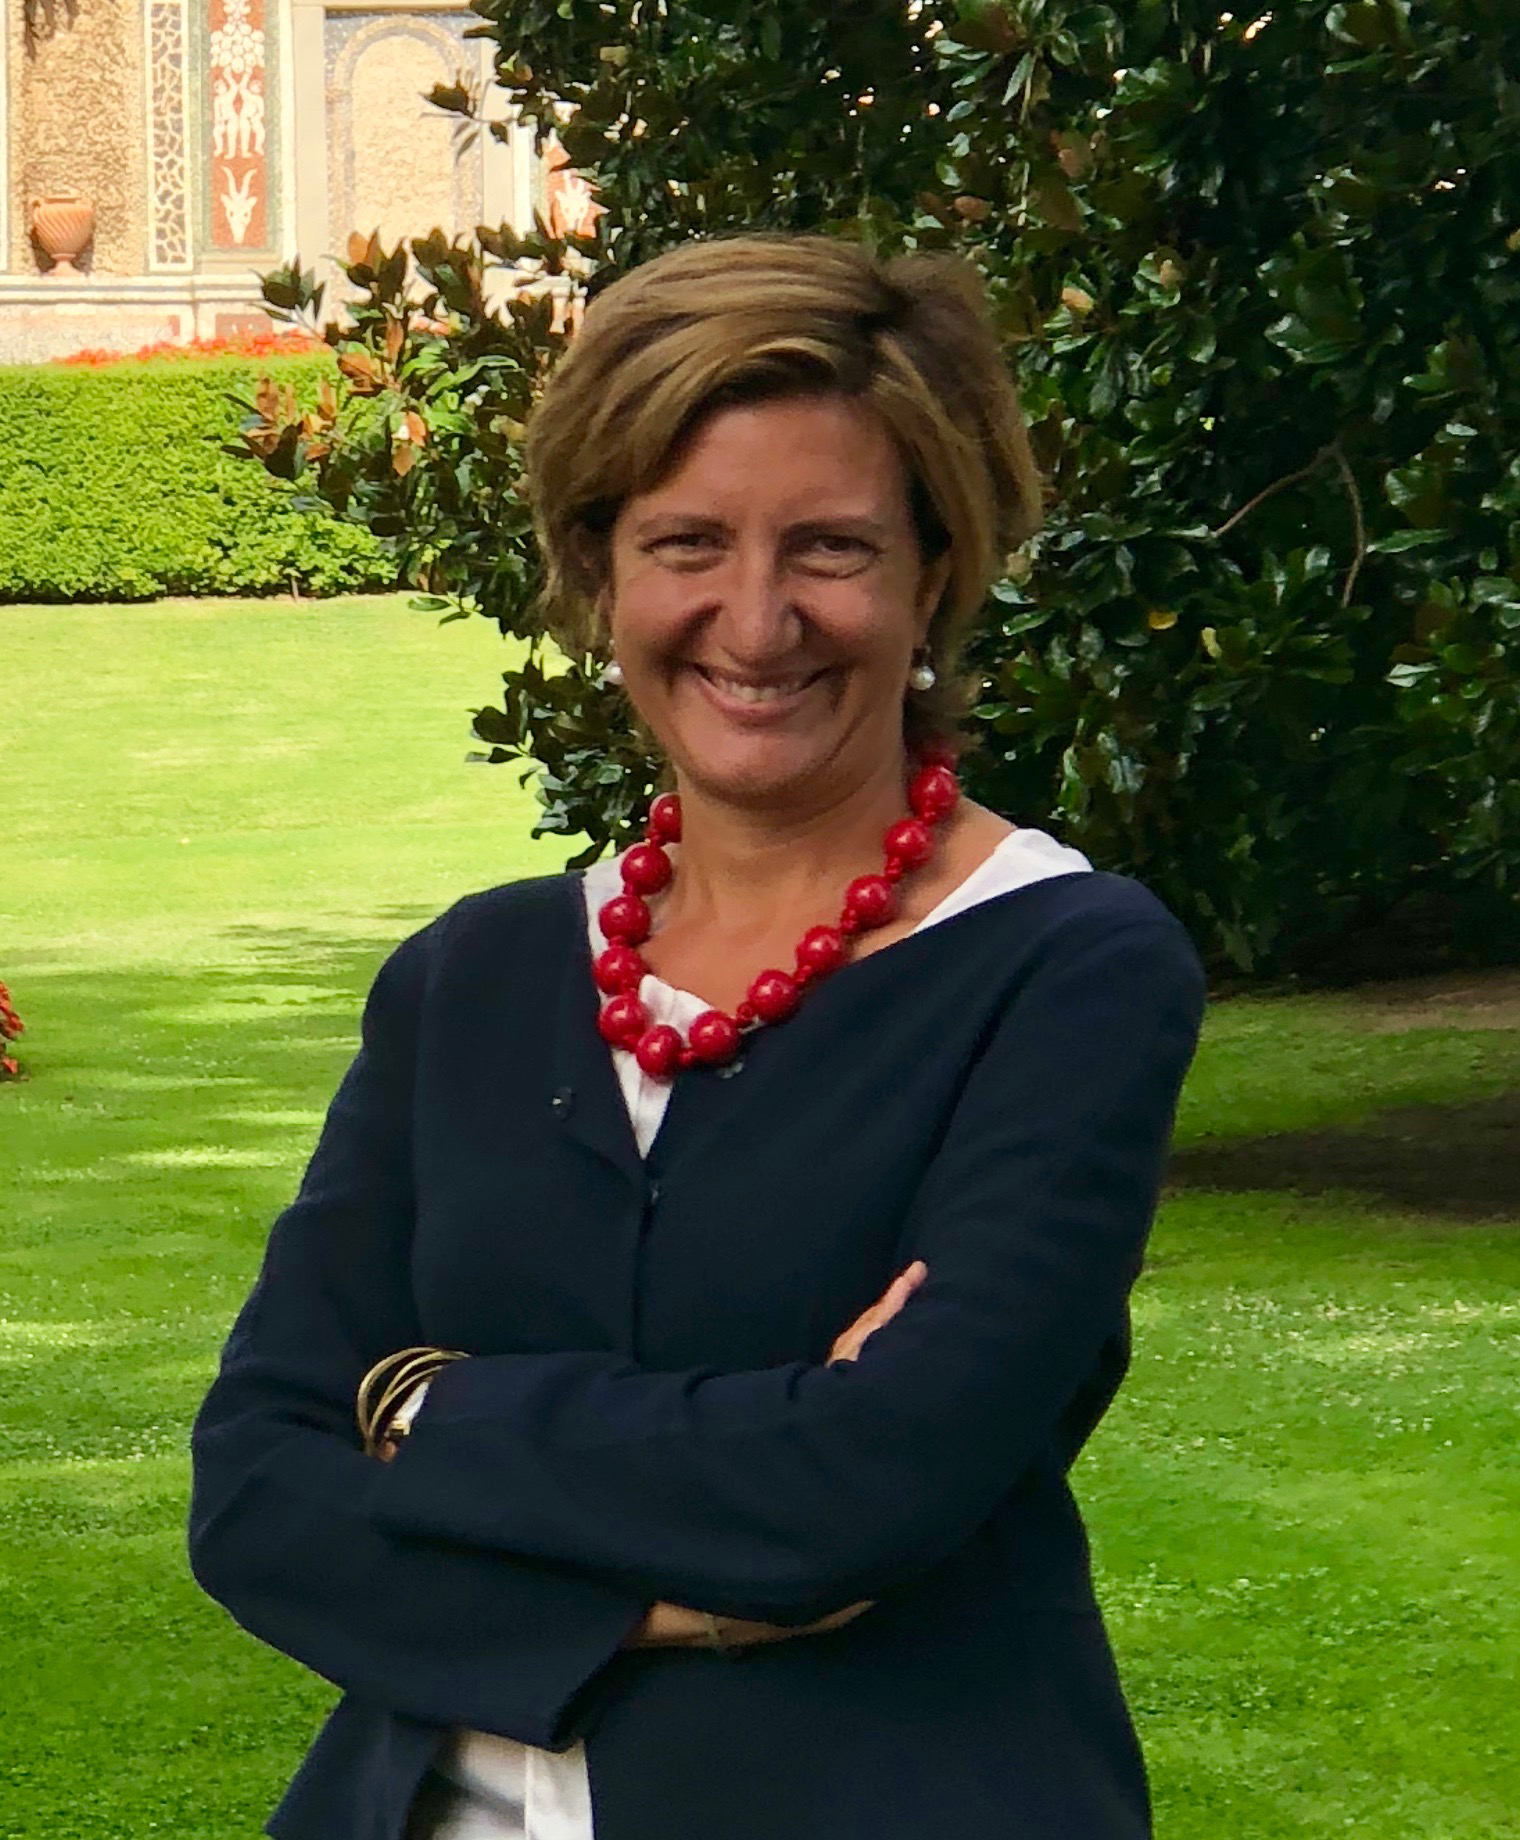 Silvia Candiani, Amministratore Delegato di Microsoft Italia